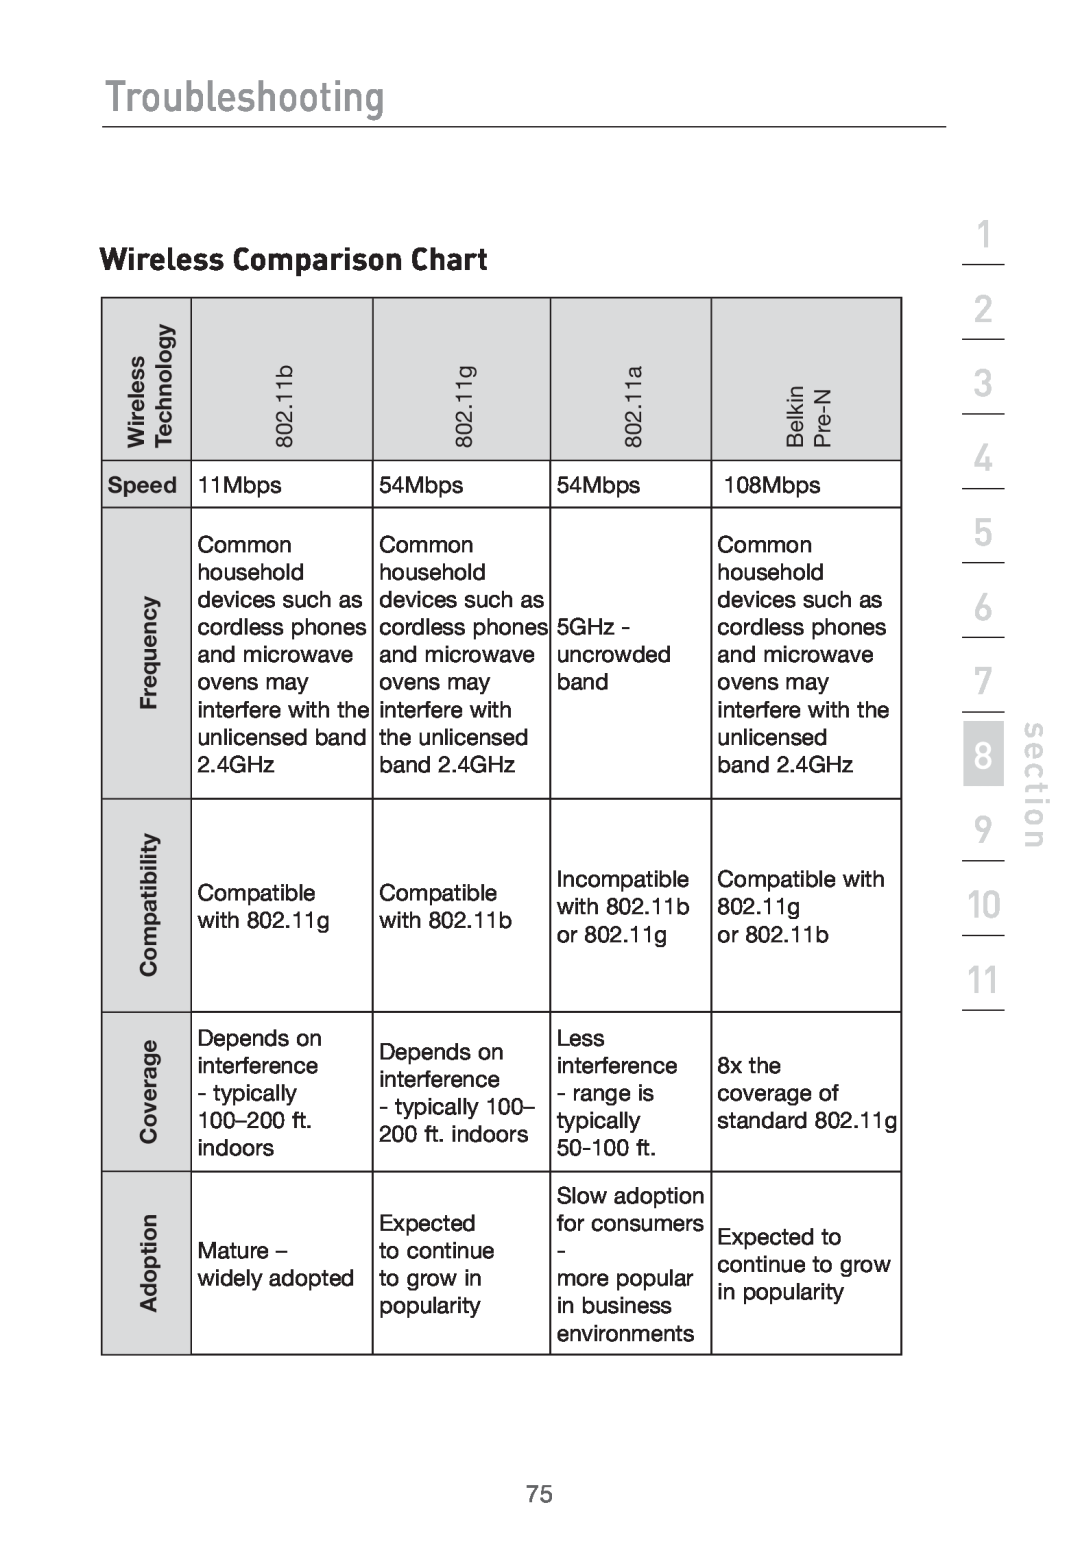 Belkin Pre-N manual Wireless Comparison Chart, Troubleshooting, Speed 